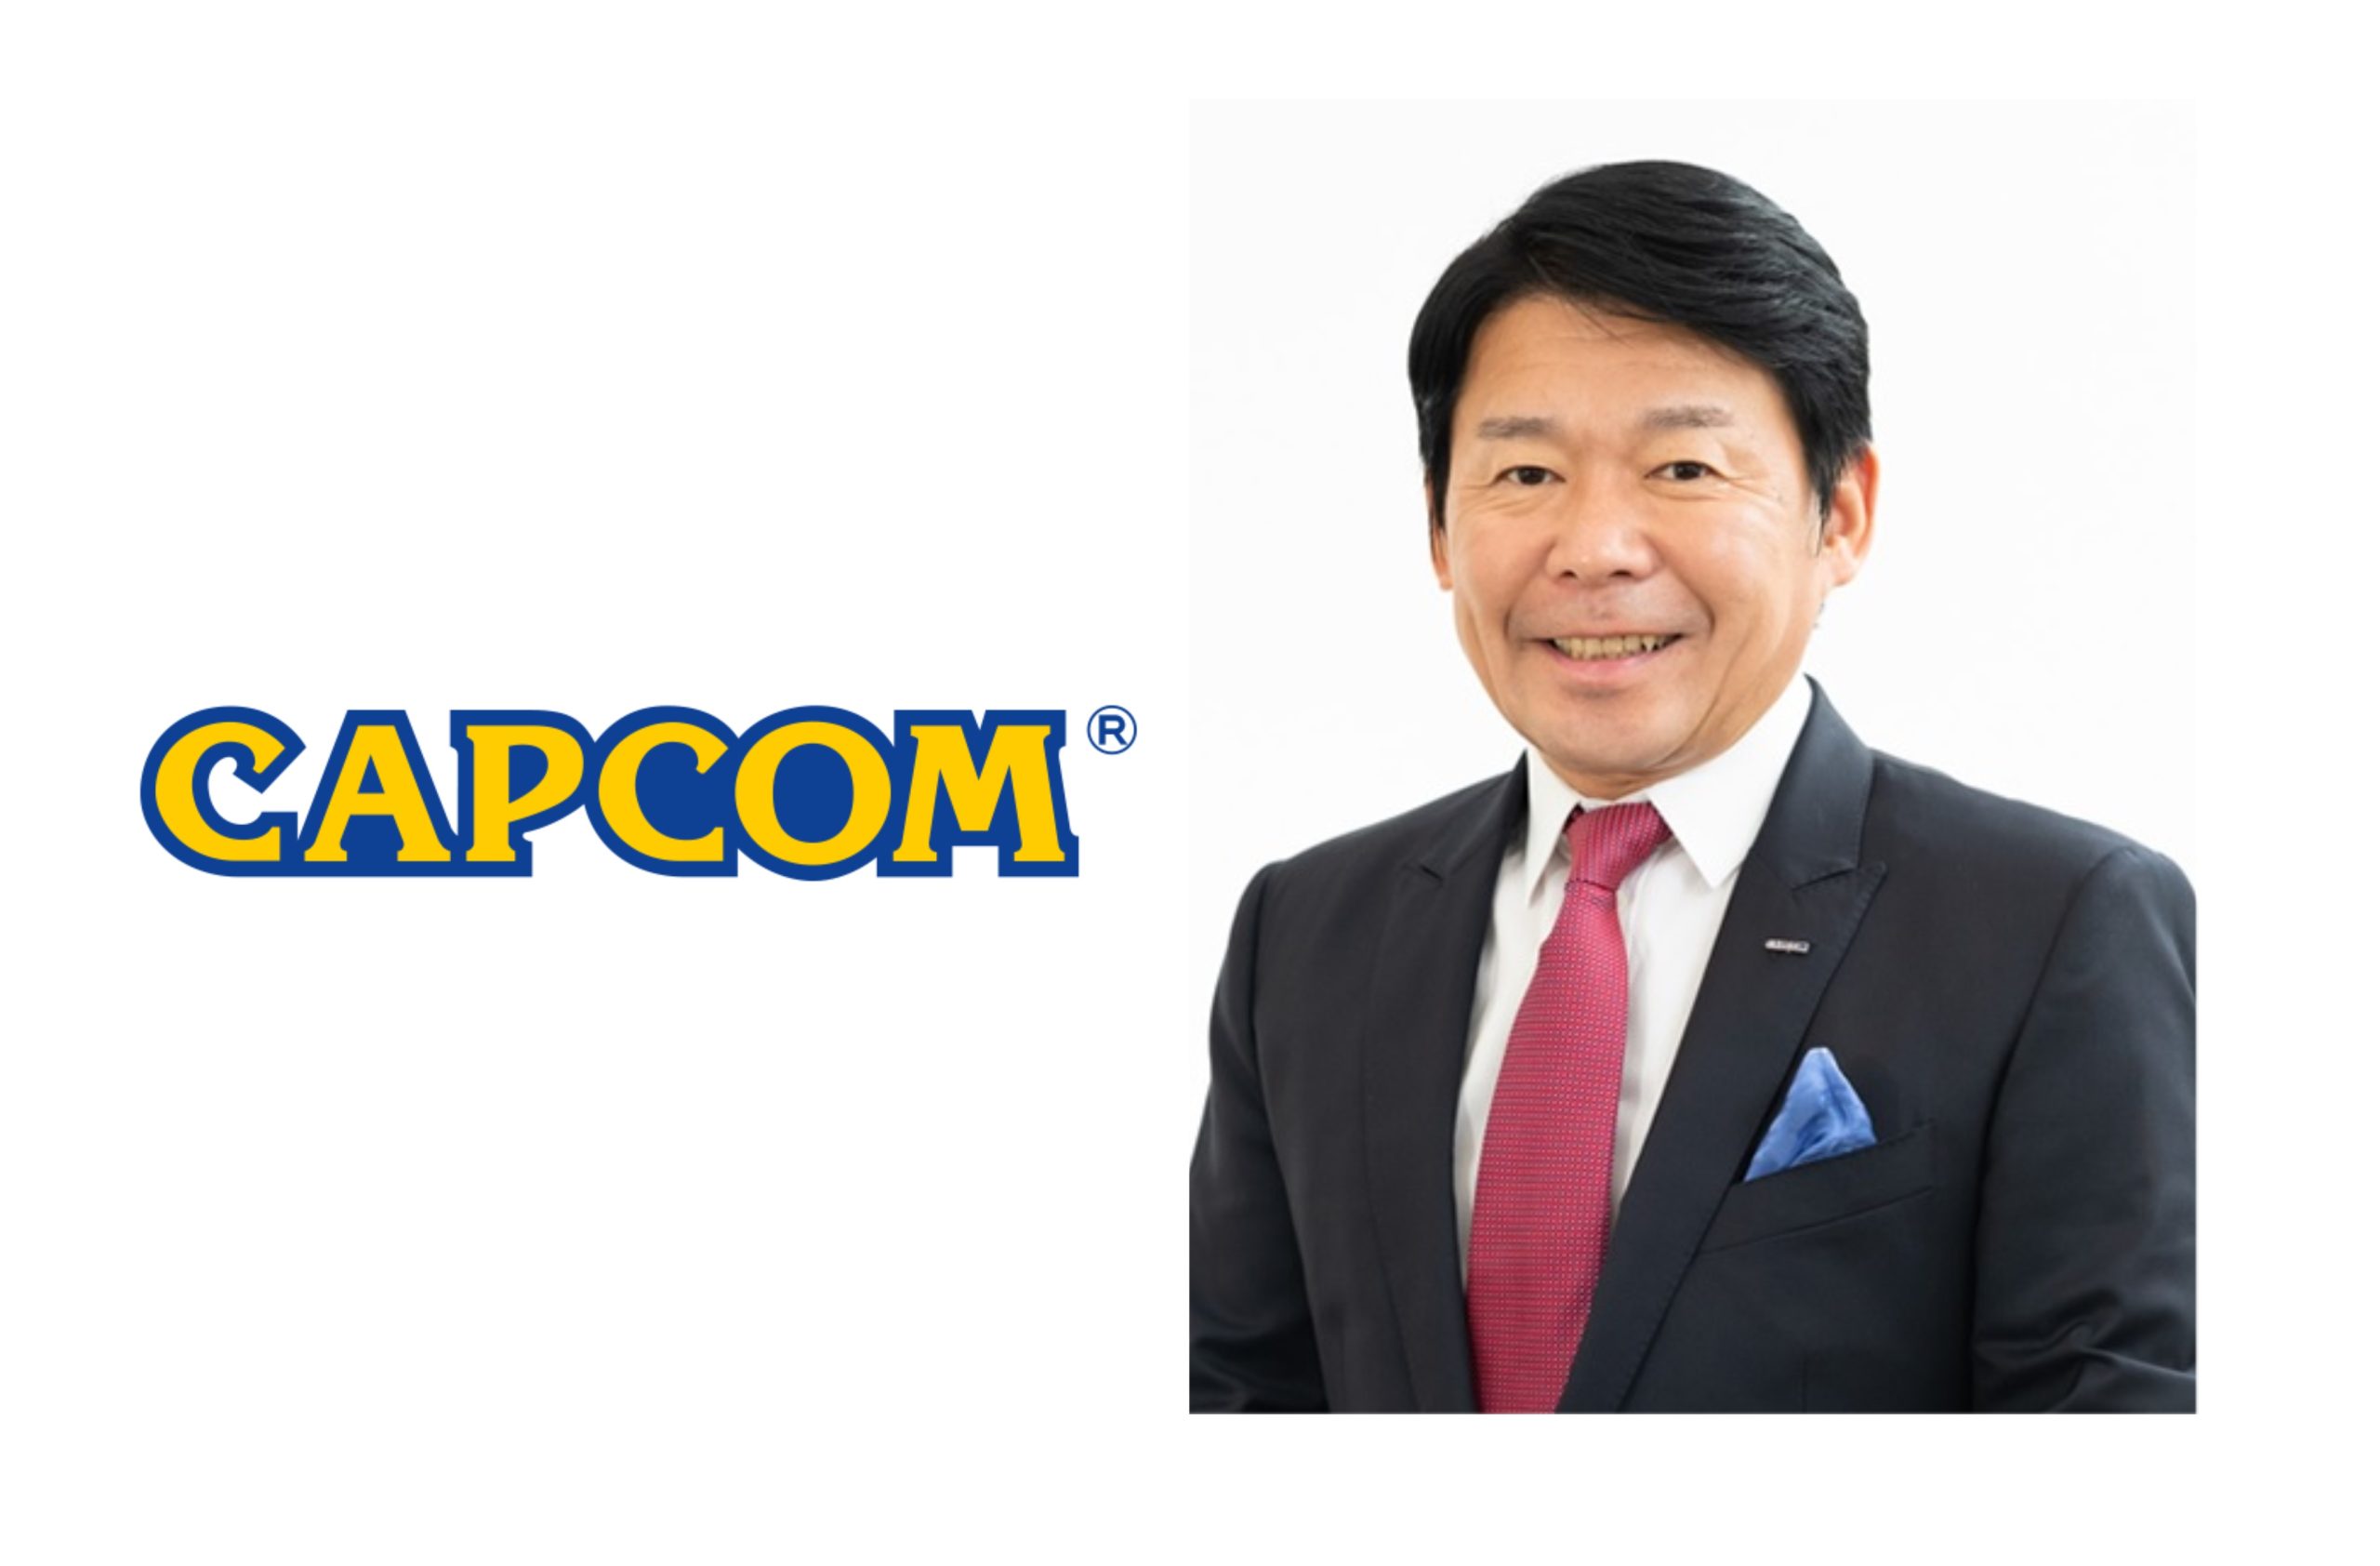 Secondo il CEO di Capcom il prezzo dei videogiochi sarebbe troppo basso